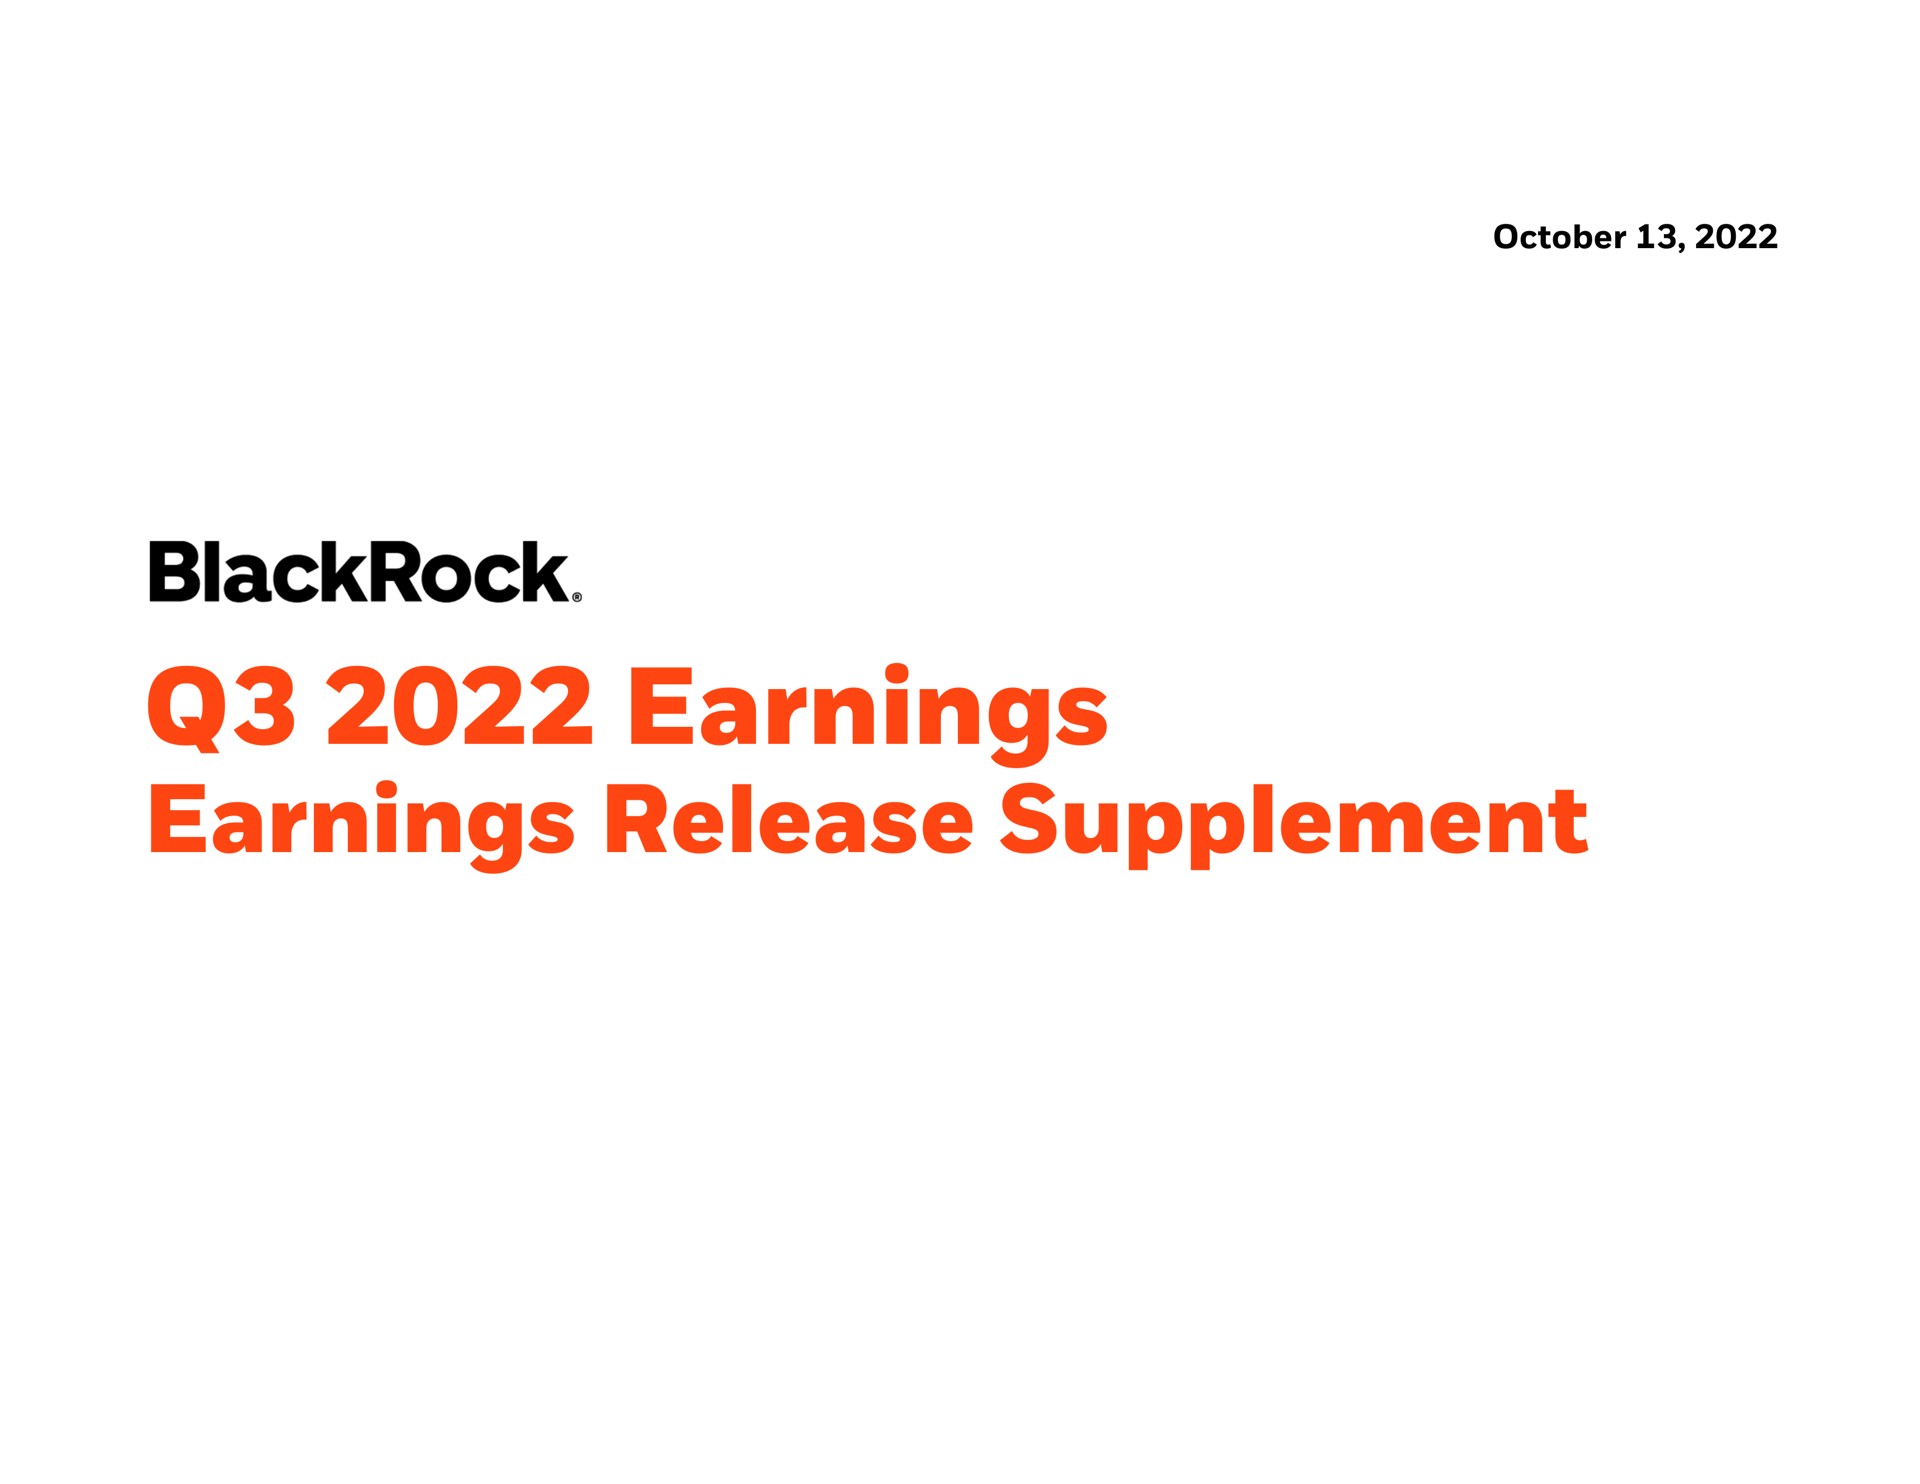 earnings earnings release supplement | BlackRock